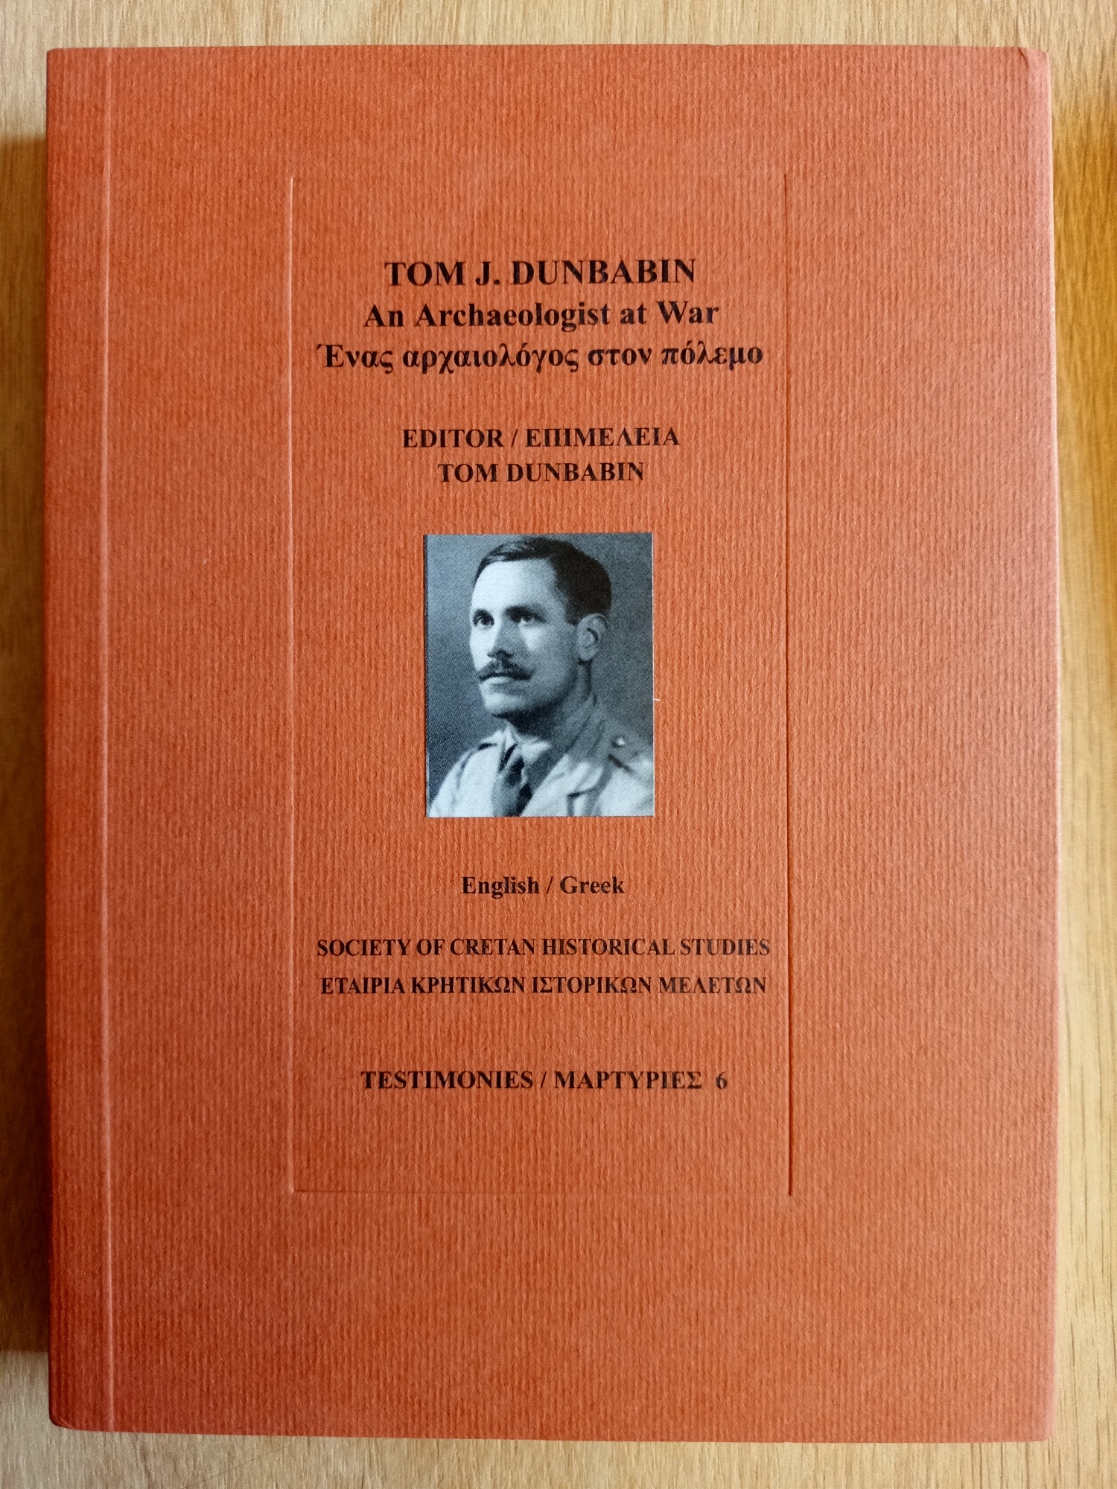 Tom J. Dunbabin - an Archaeologist at War 